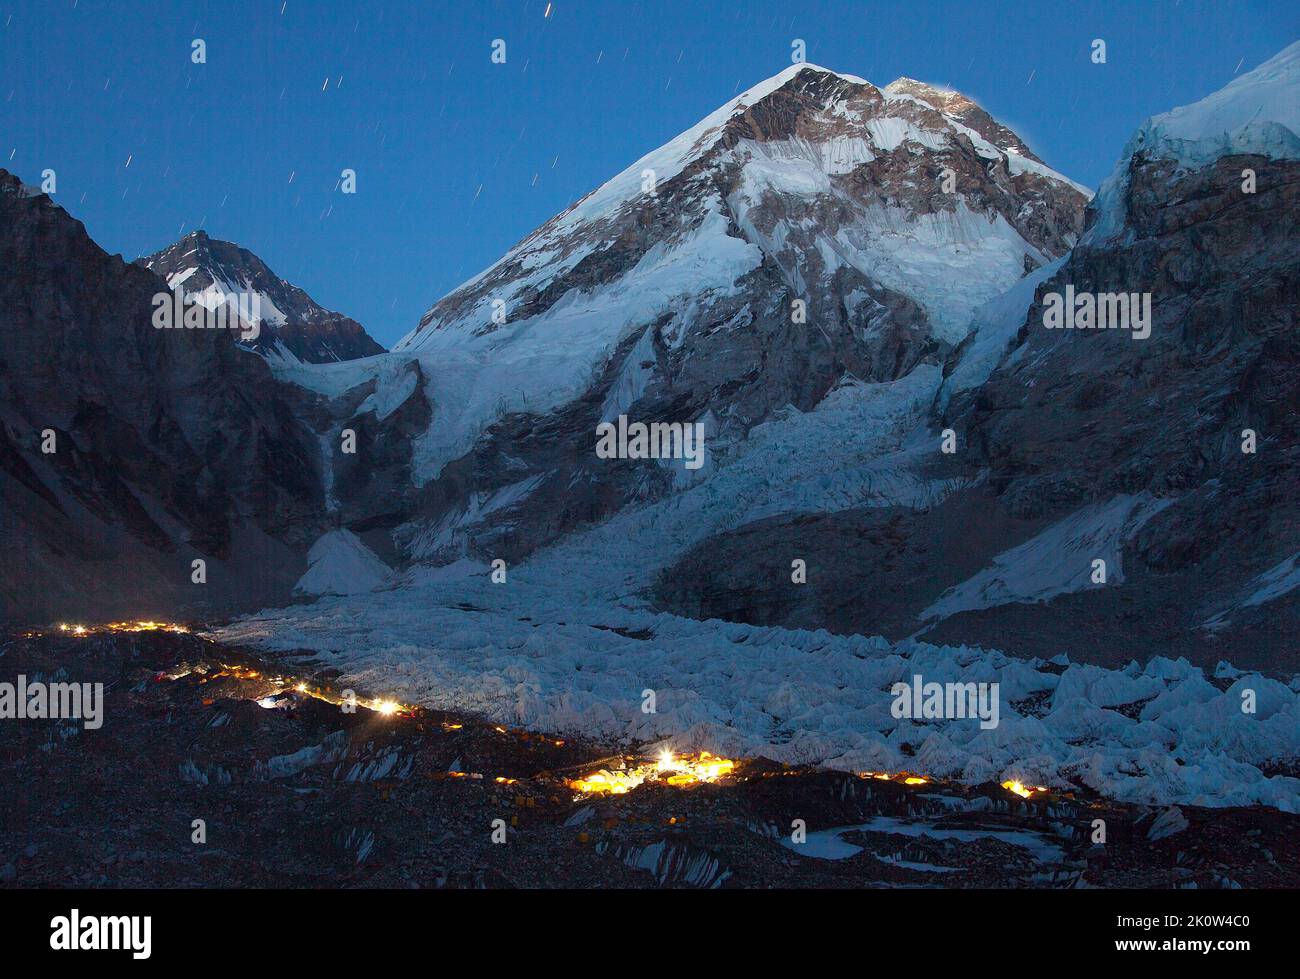 Nightly panoramic view of Mount Everest base camp, Everest area, Khumbu glacier, Sagarmatha national park, Nepal Stock Photo